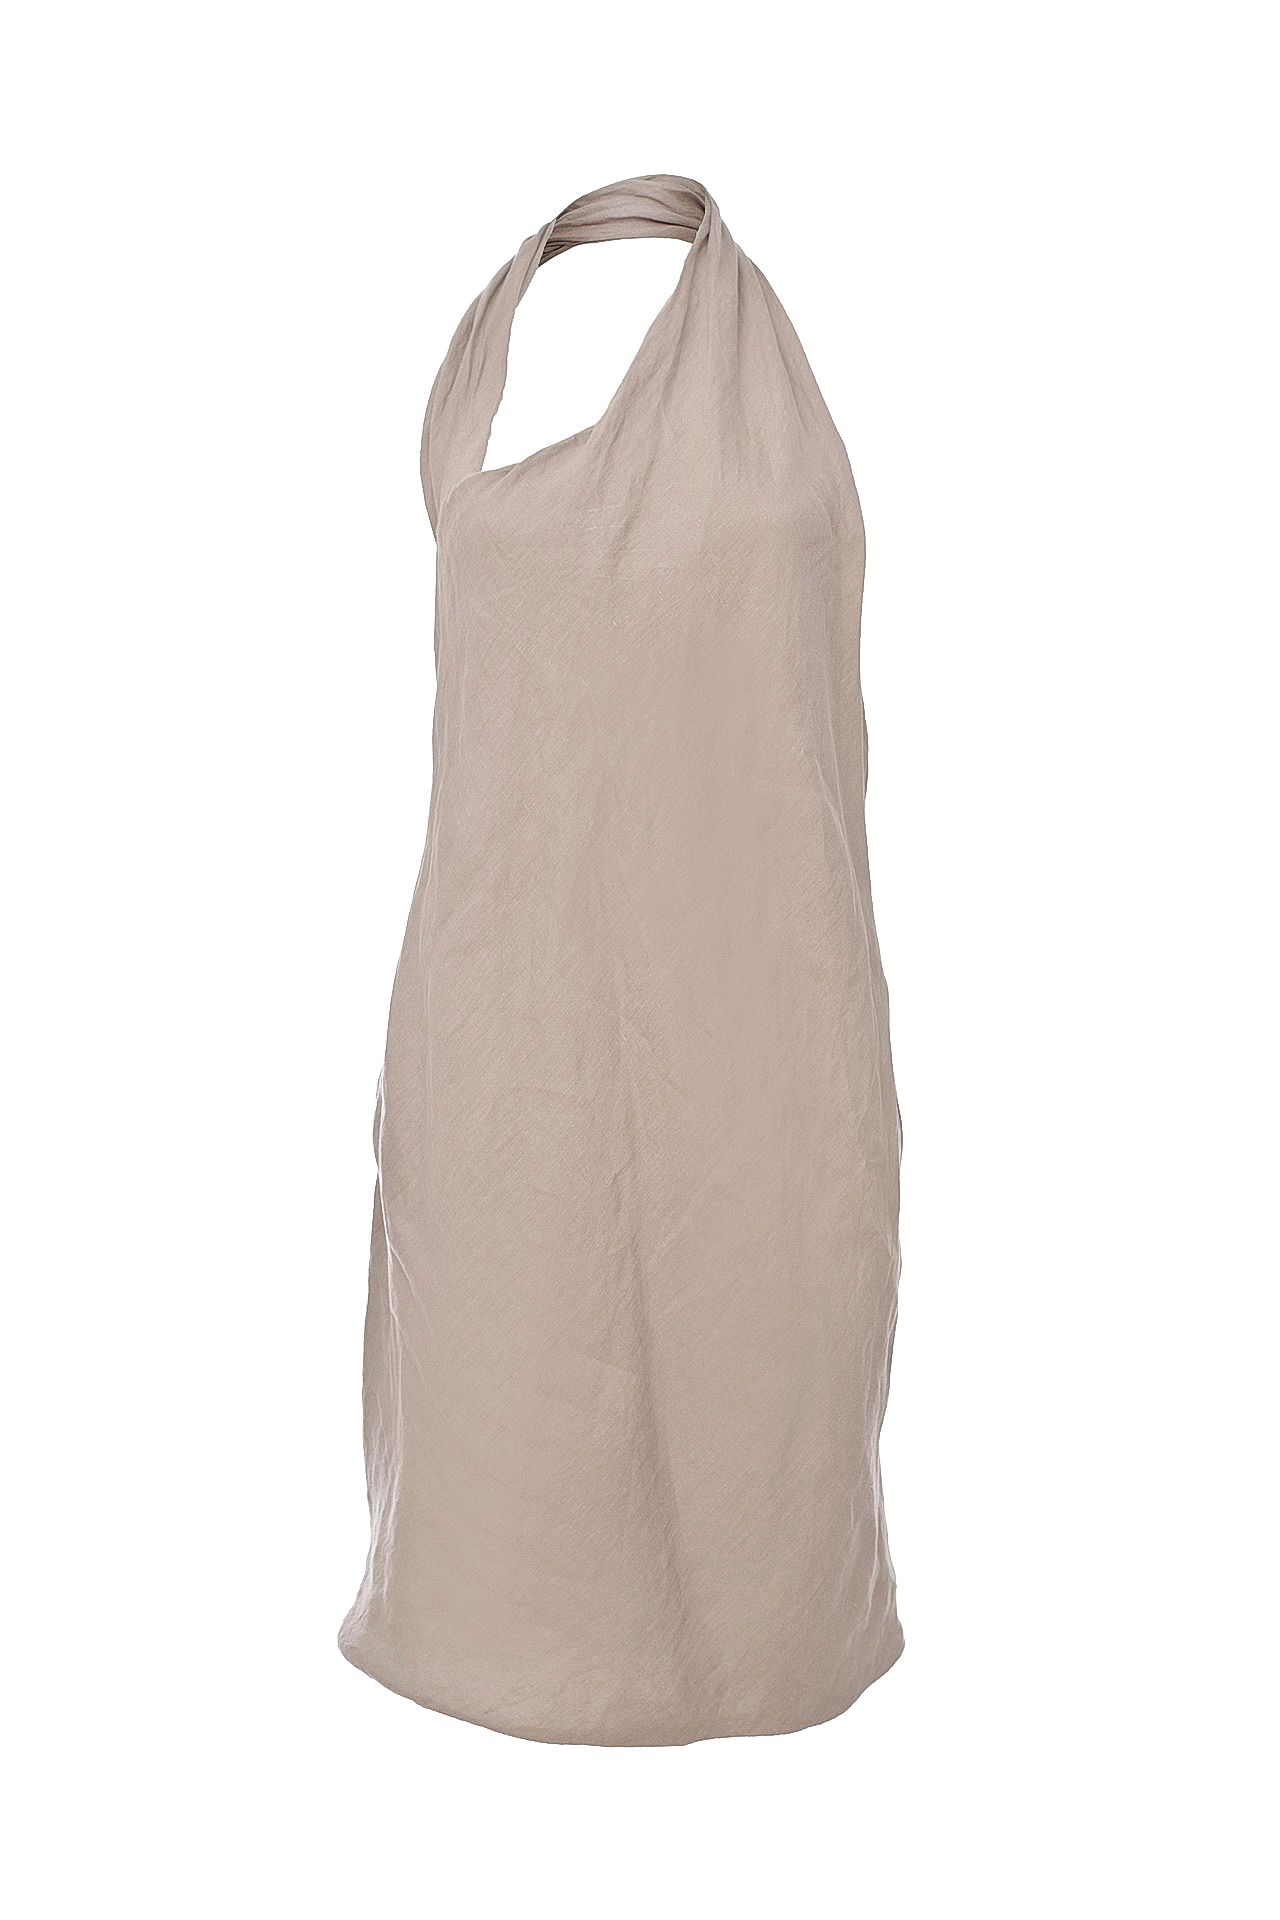 Одежда женская Платье LIVIANA CONTI (L2E672/12.1). Купить за 9400 руб.